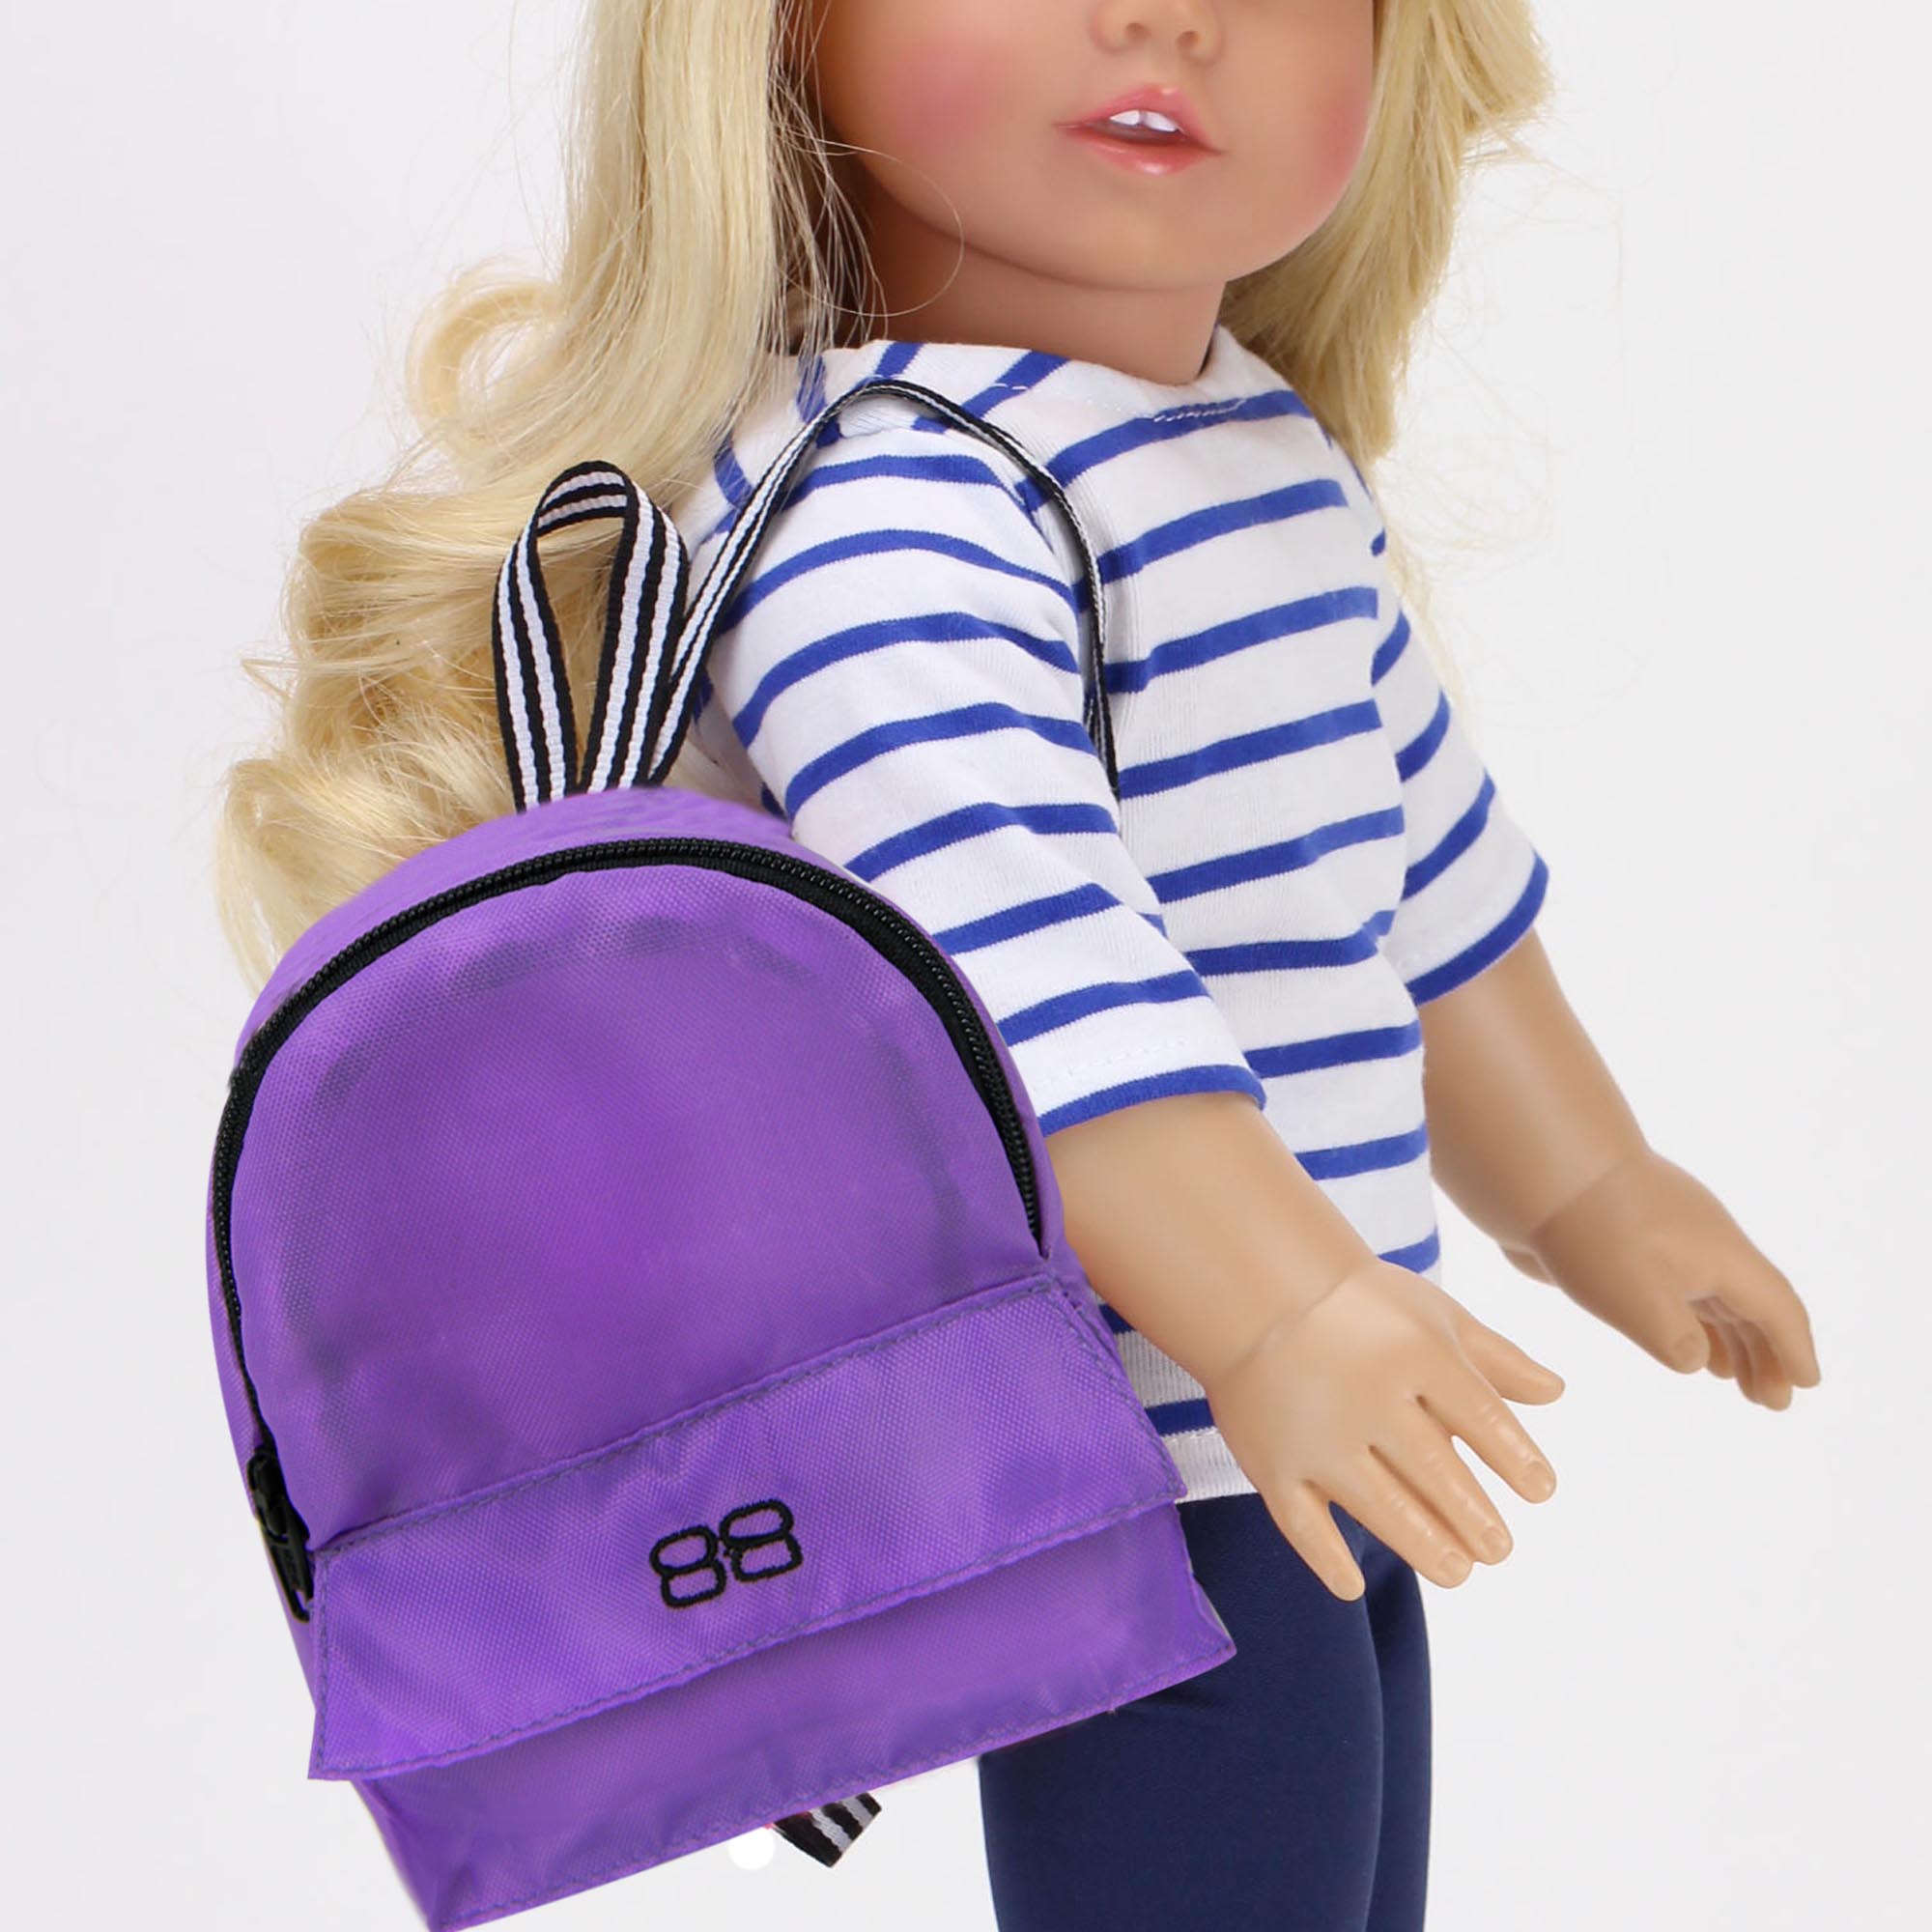 Backpack for 18 dolls like American Girl Dolls